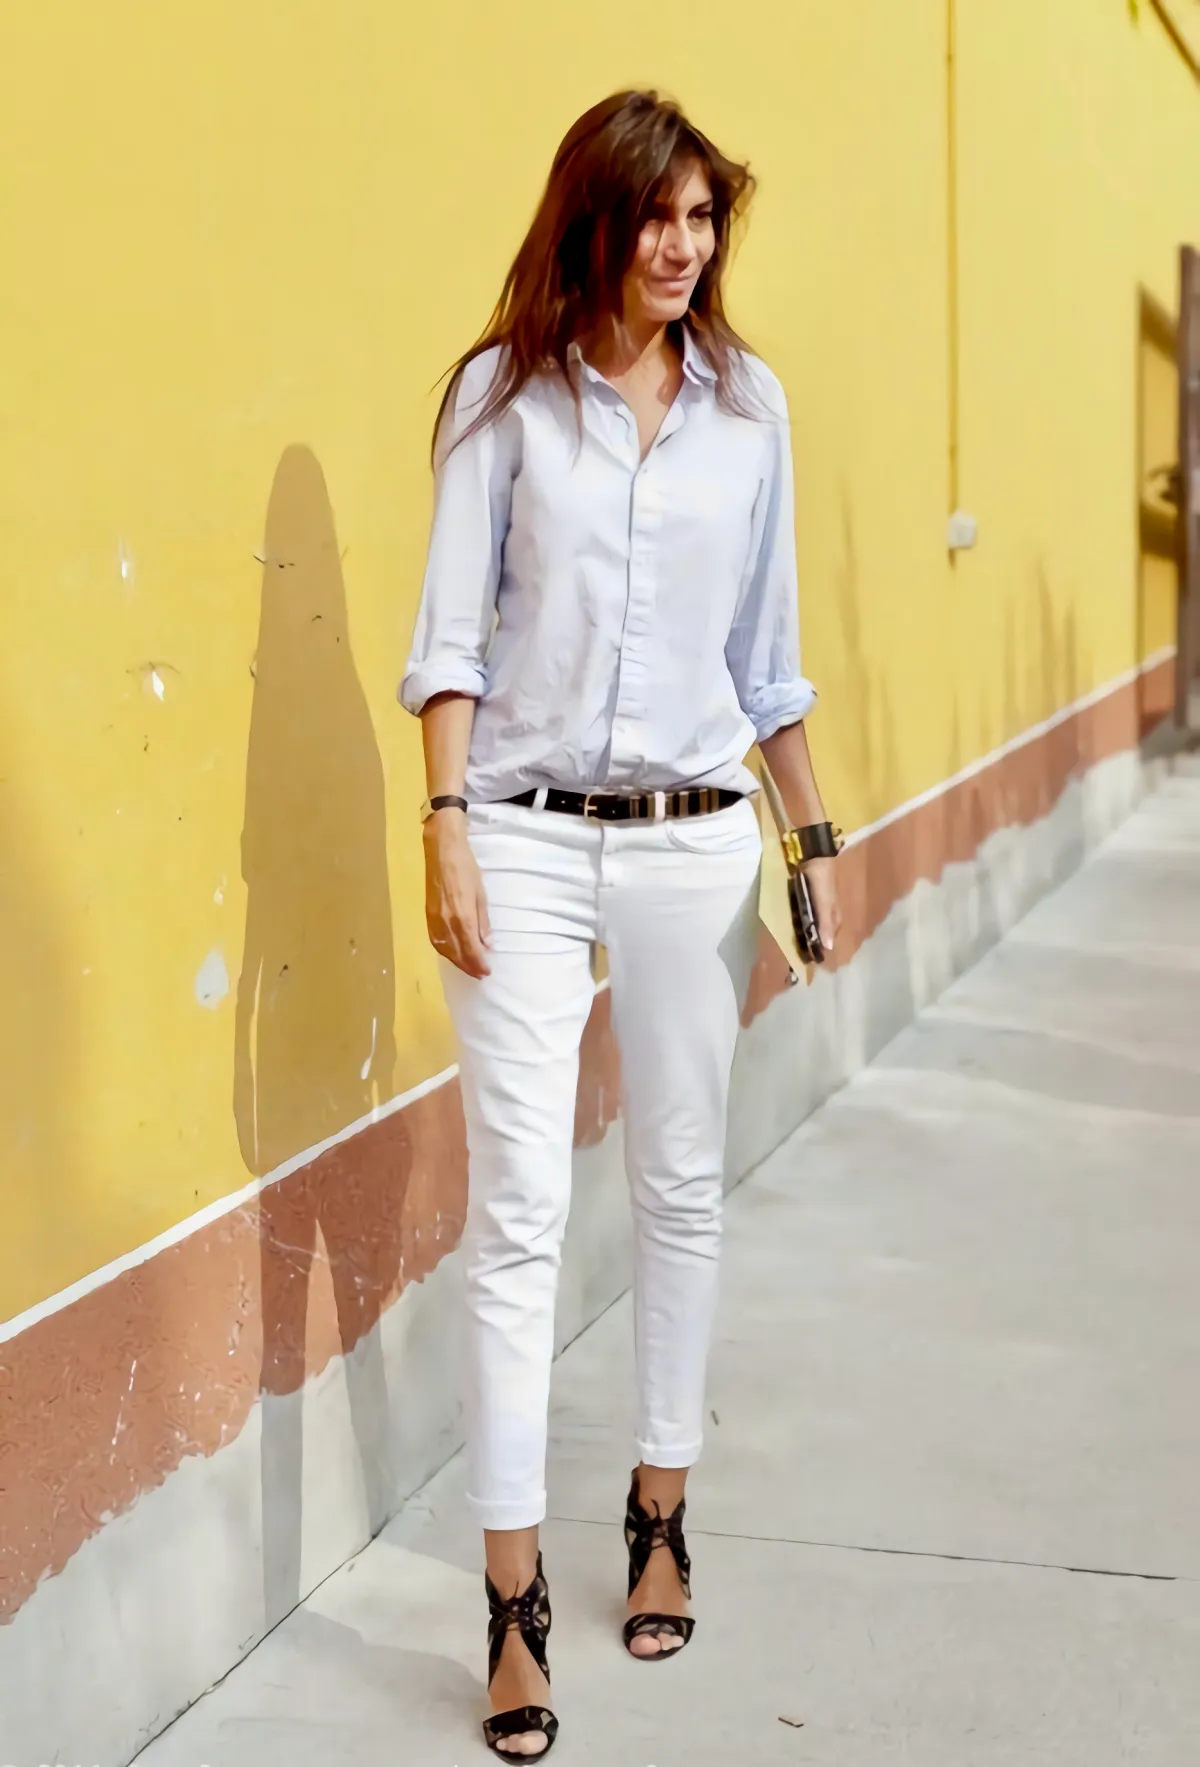 emmanuelle alt en jeans blanc ceinture noir escarpins noirs et che;ise a manches retroussees sur fond un mur jaune